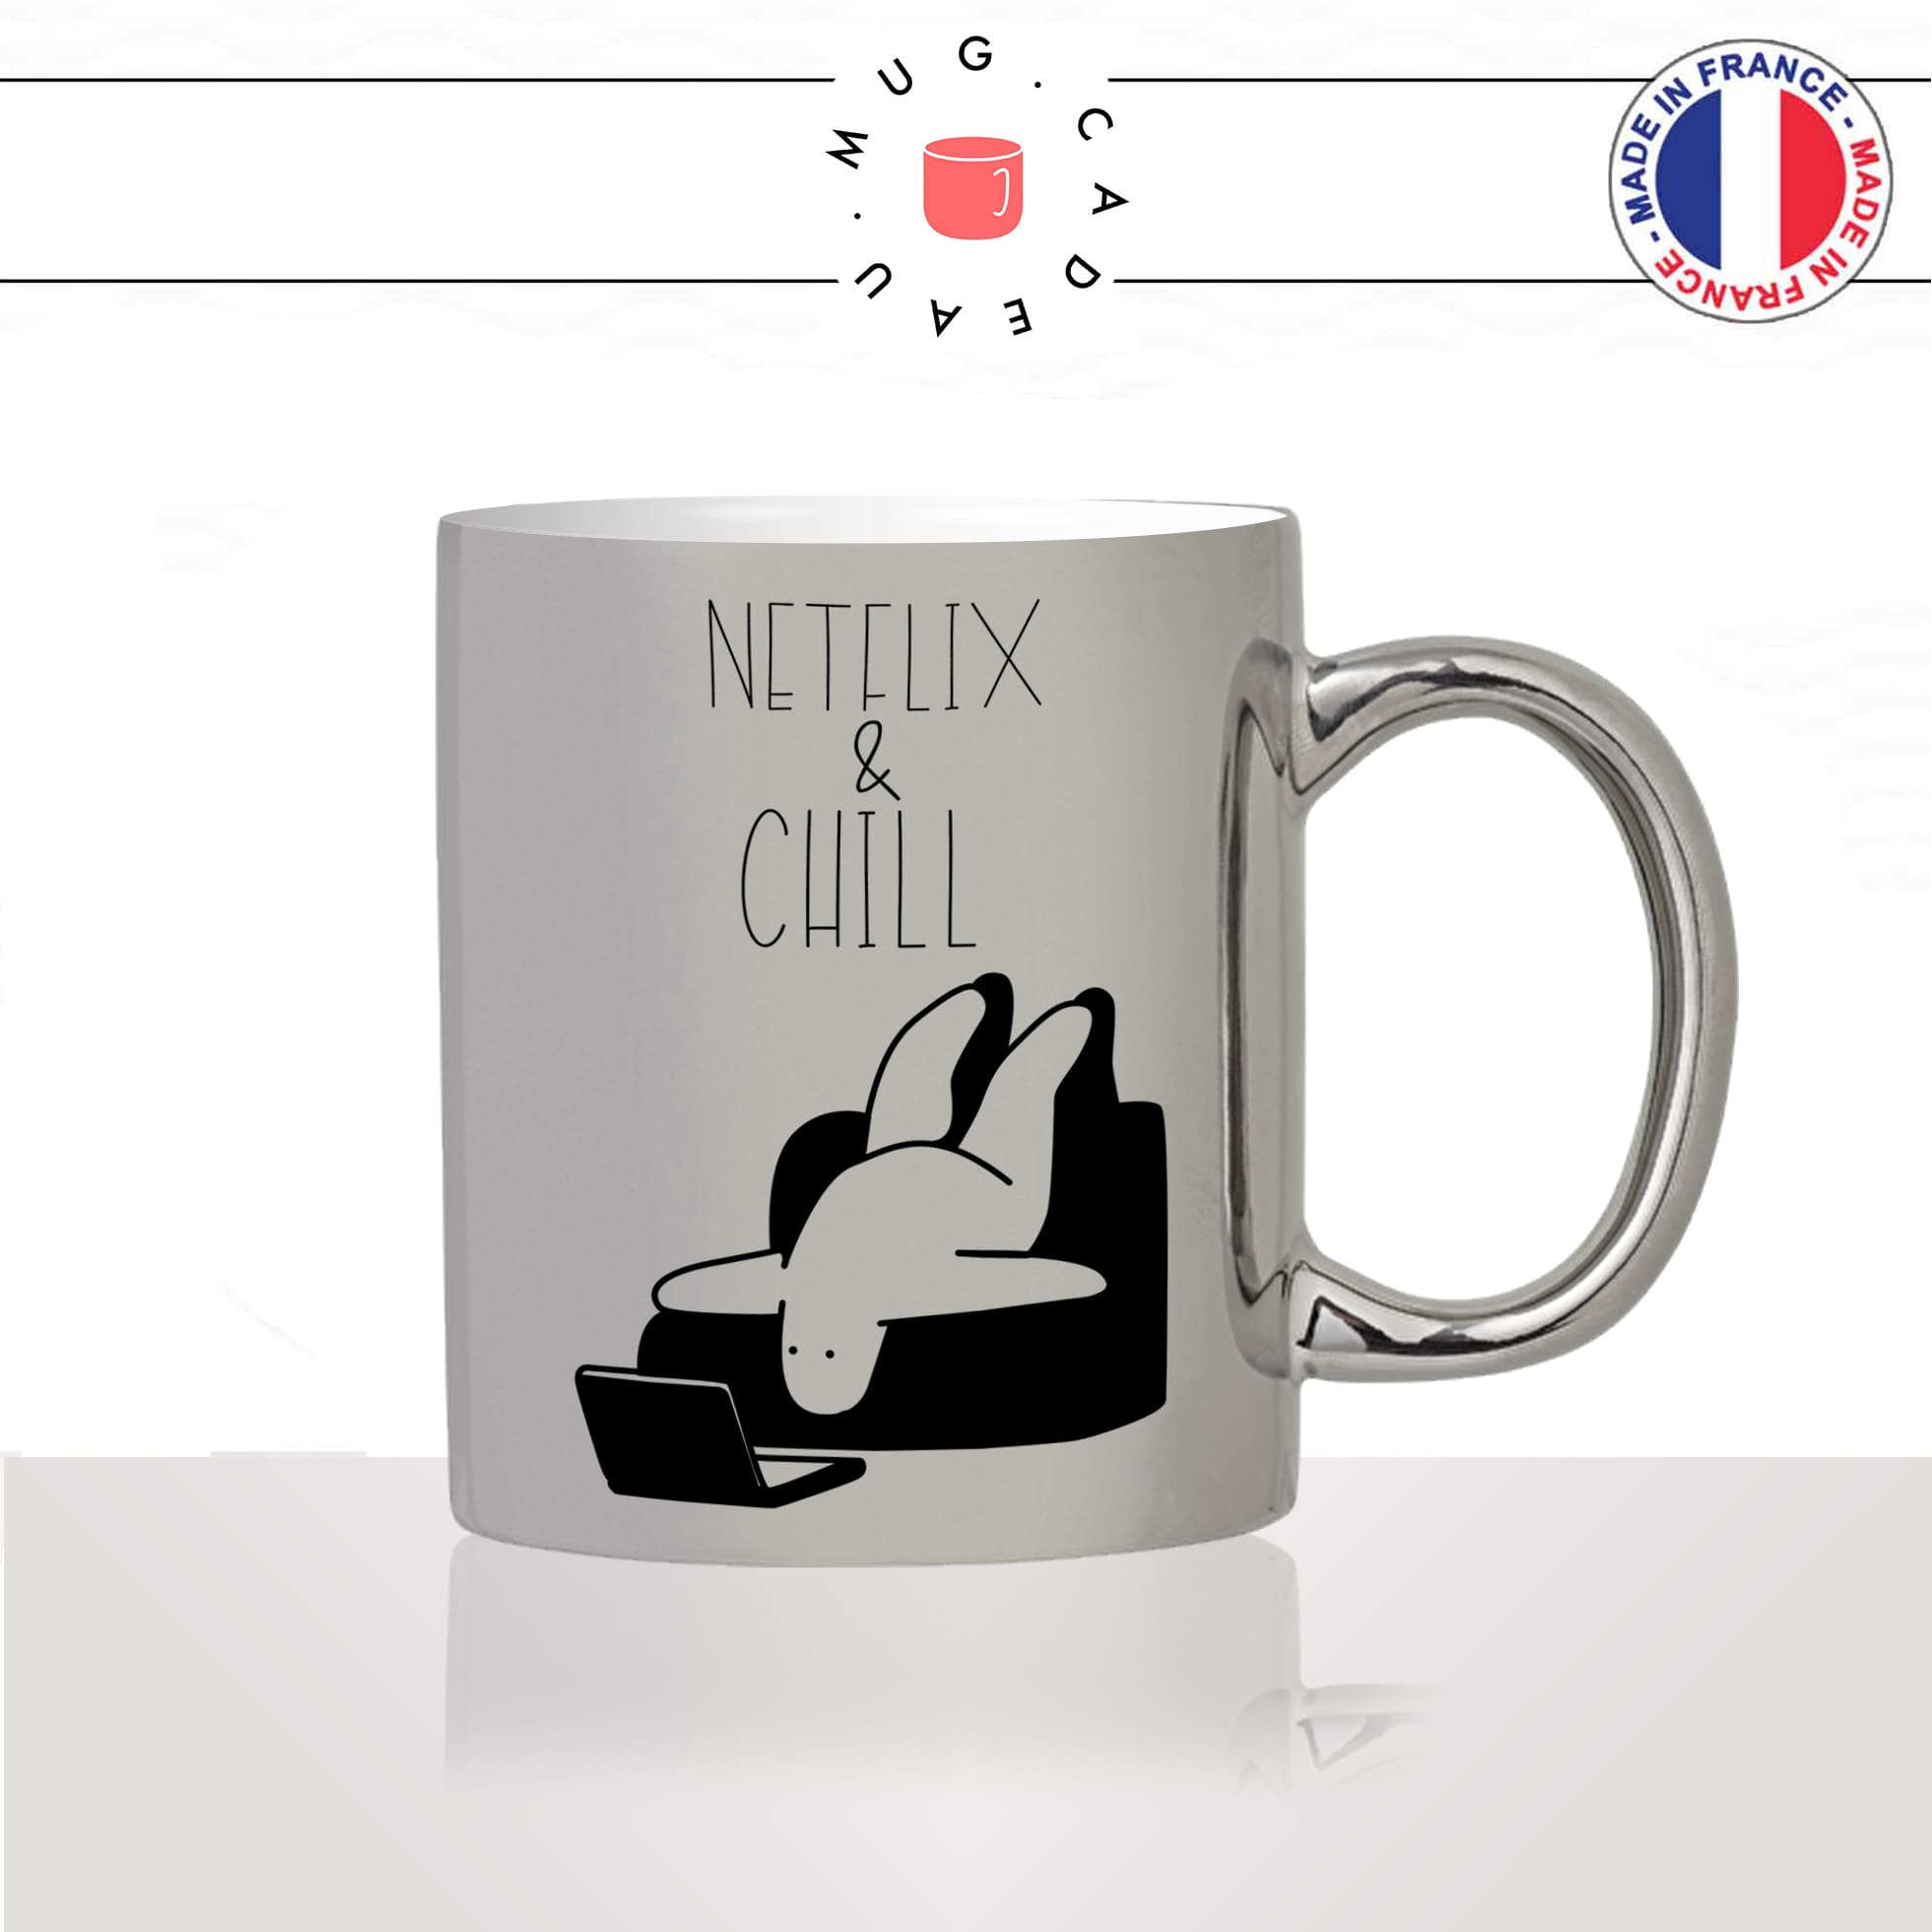 mug-tasse-argent-argenté-silver-netflix-and-chiill-canapé-serie-film-humour-confinement-idée-cadeau-fun-cool-café-thé2